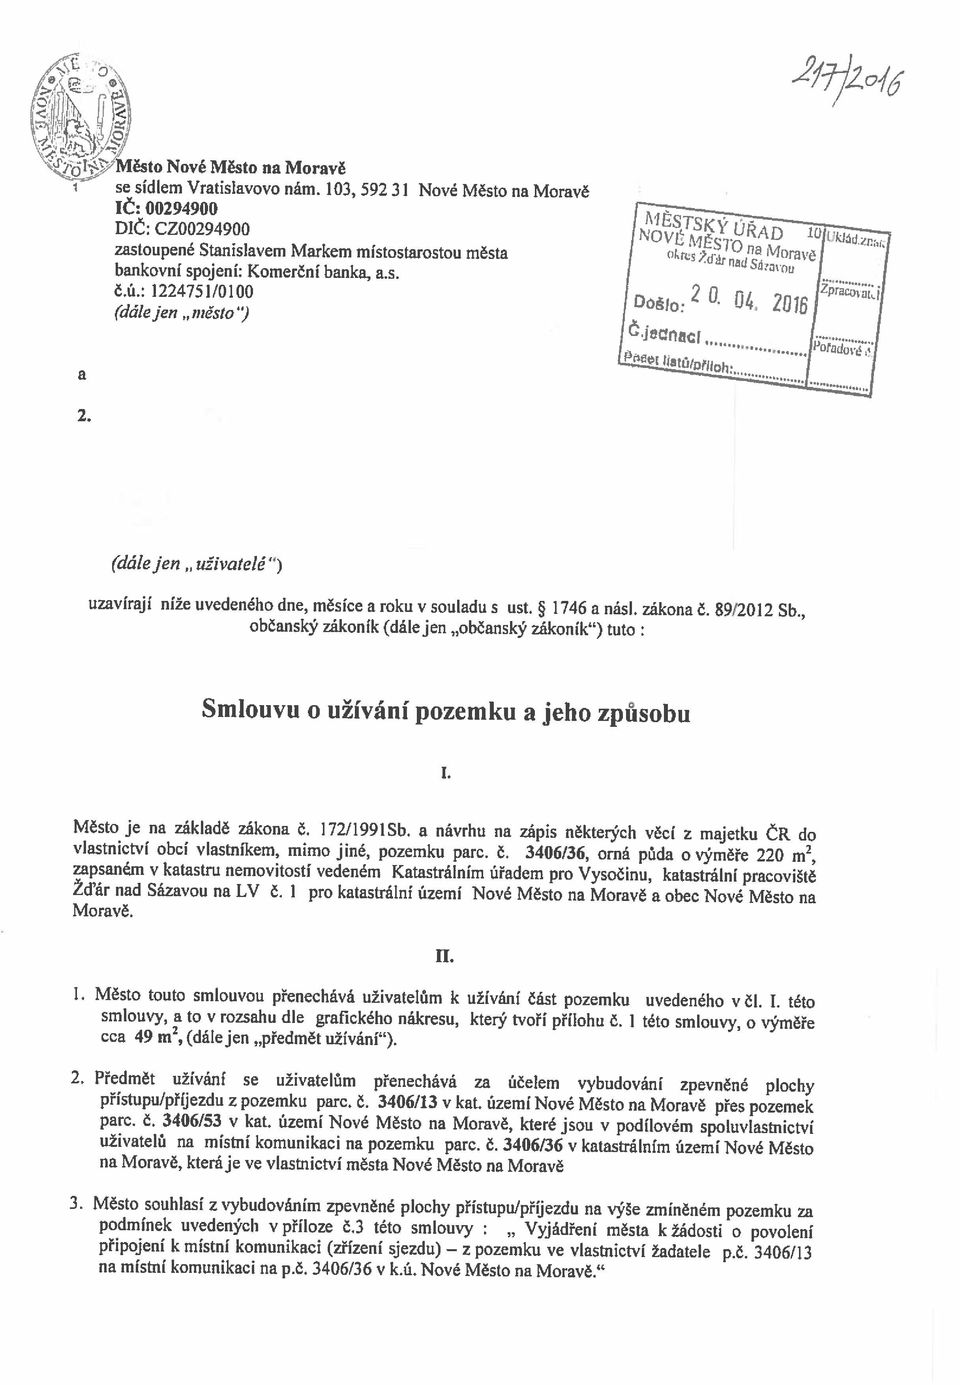 3 této smlouvy Vyjádření města k žádosti o povolení připojení k místní komunikaci (zřízeni sjezdu) z pozemku ve vlastnictví žadatele p.č. 3406/13 3.